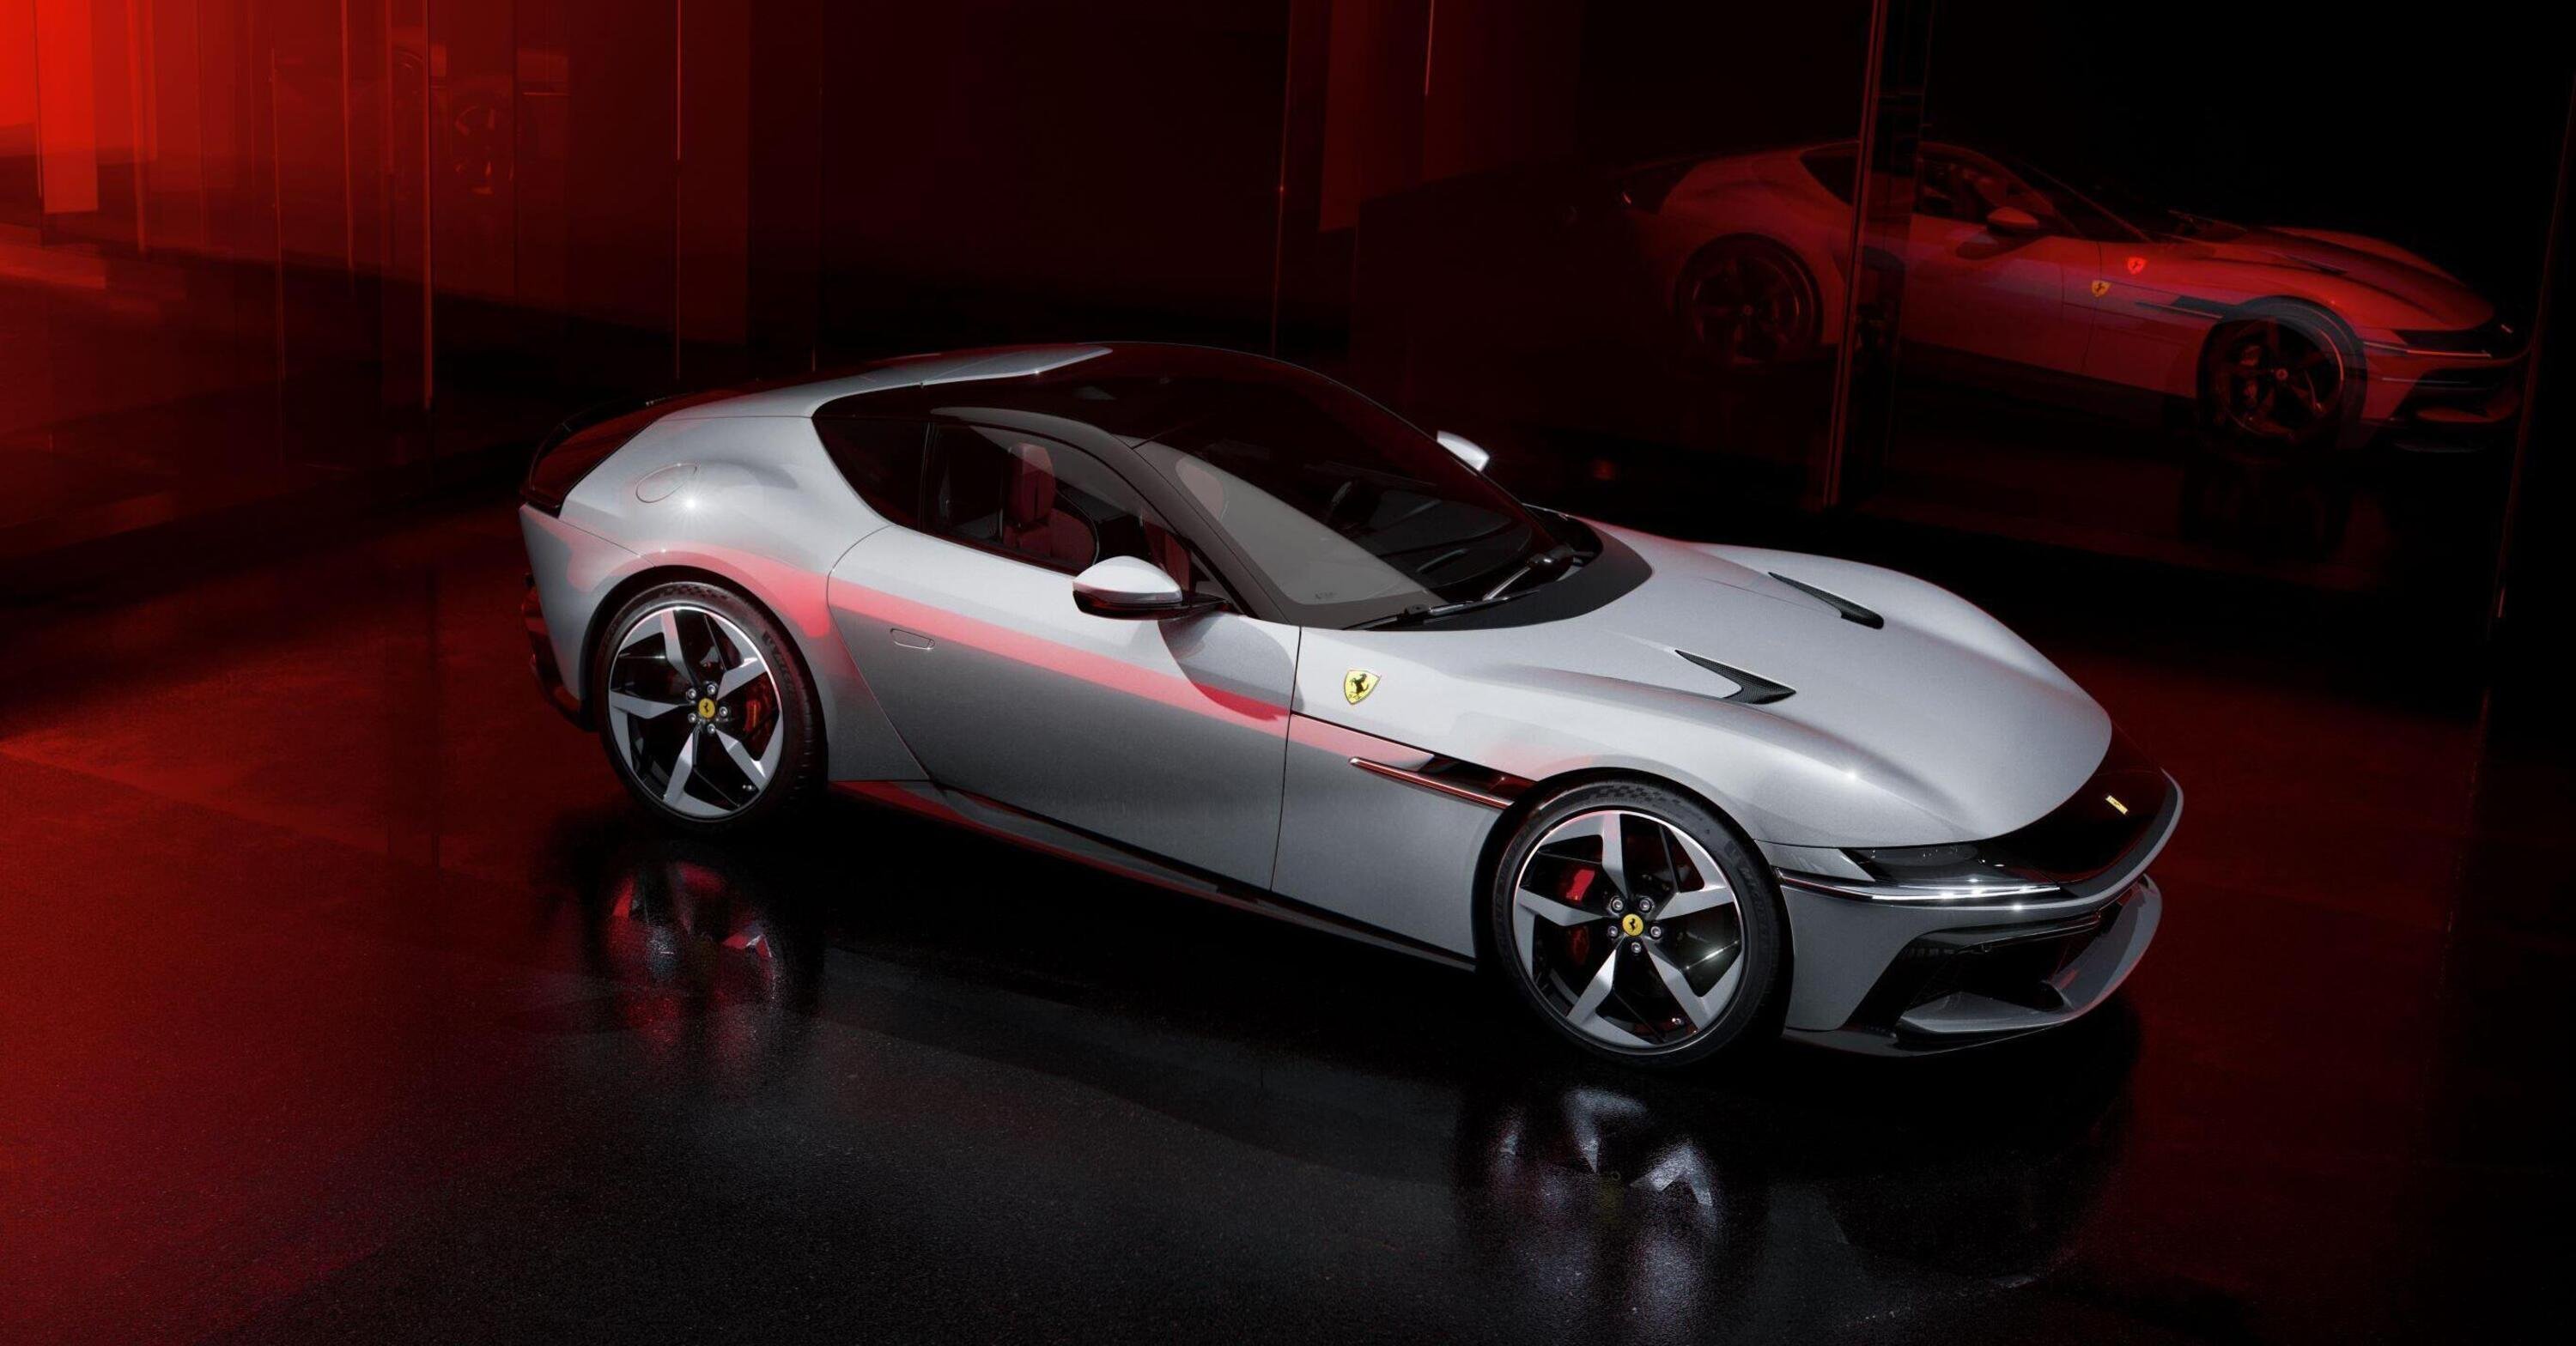 Ferrari 12Cilindri: motore aspirato 12 cilindri da 830 cavalli, con guizzi di Daytona